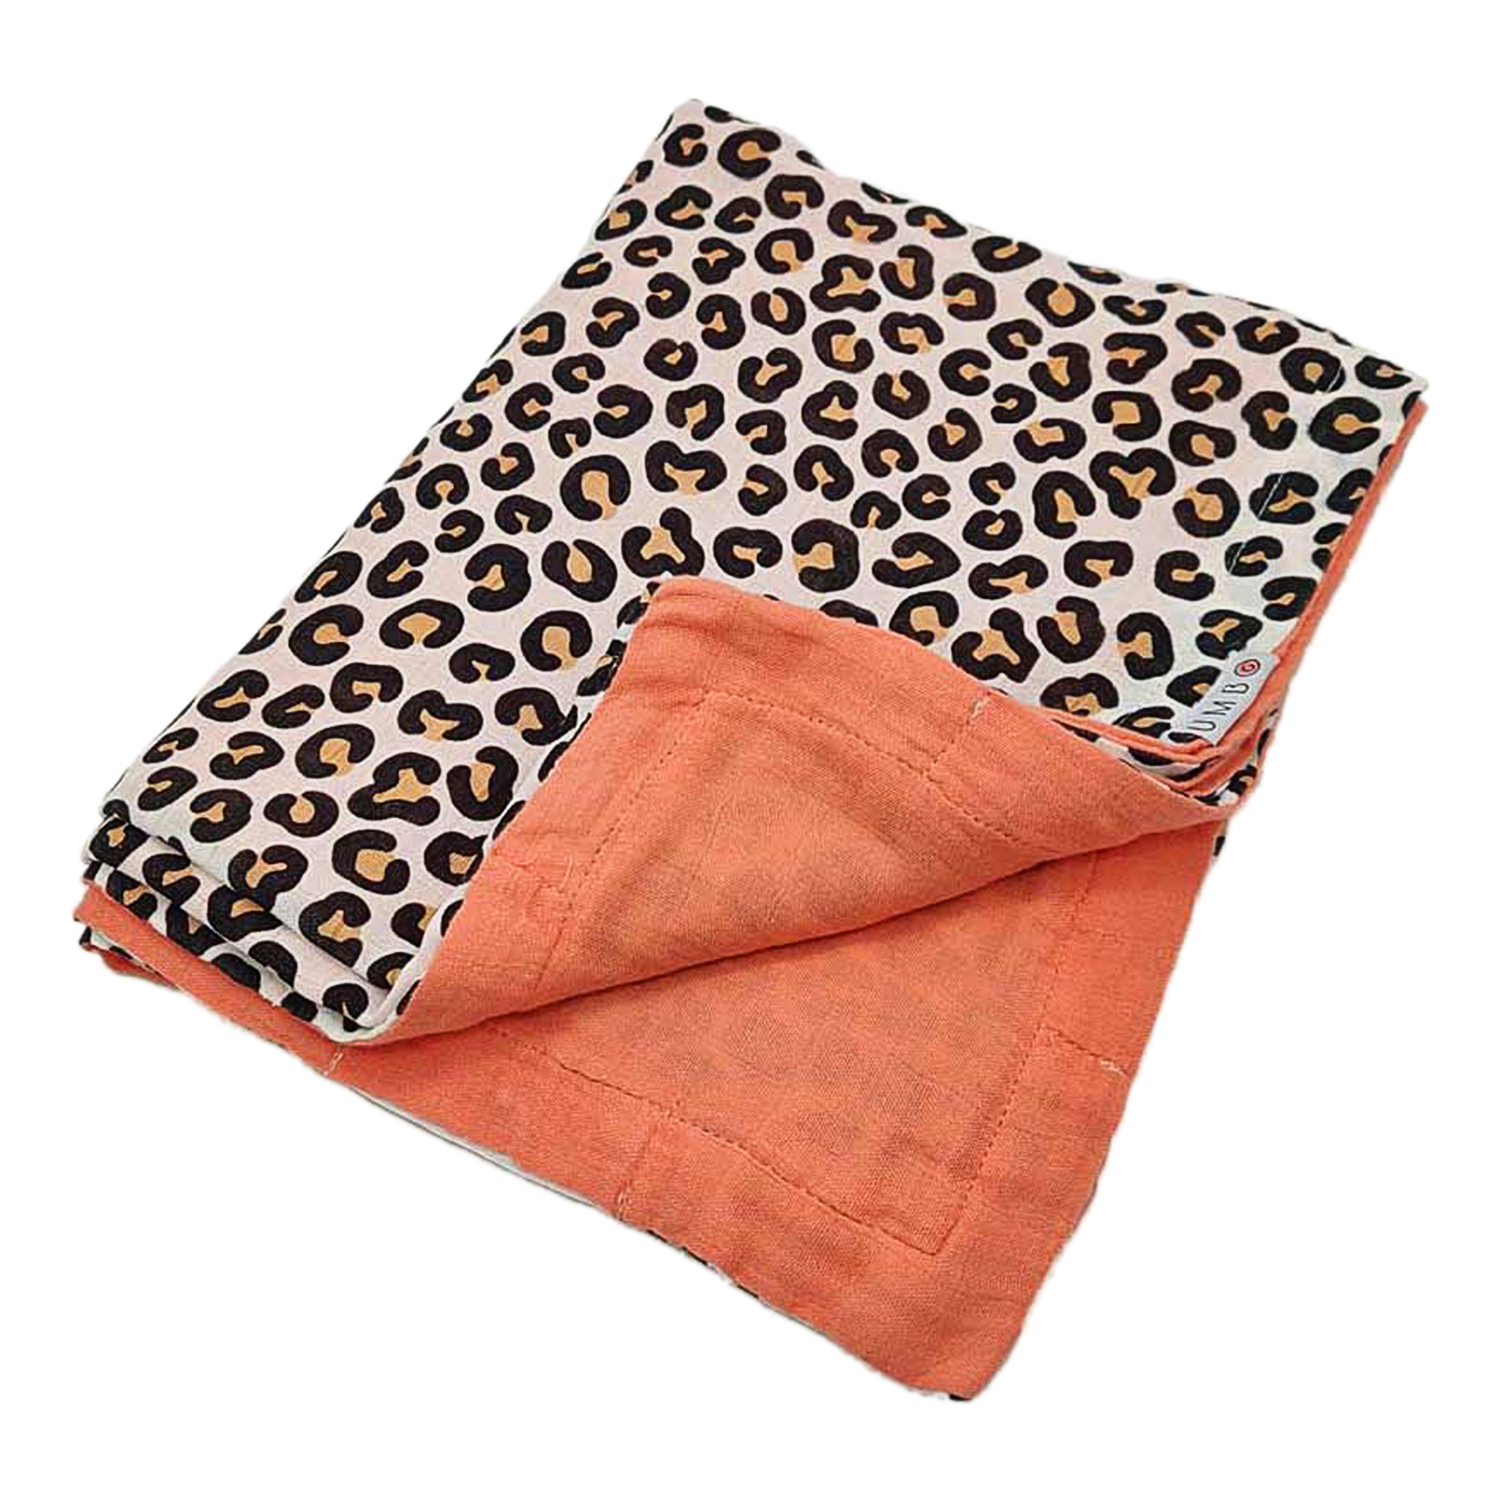 Муслиновое одеяло "Леопард и коралловый закат", 118х90 см UMBO детское, Нет цвета, 100%органический хлопок  - купить со скидкой